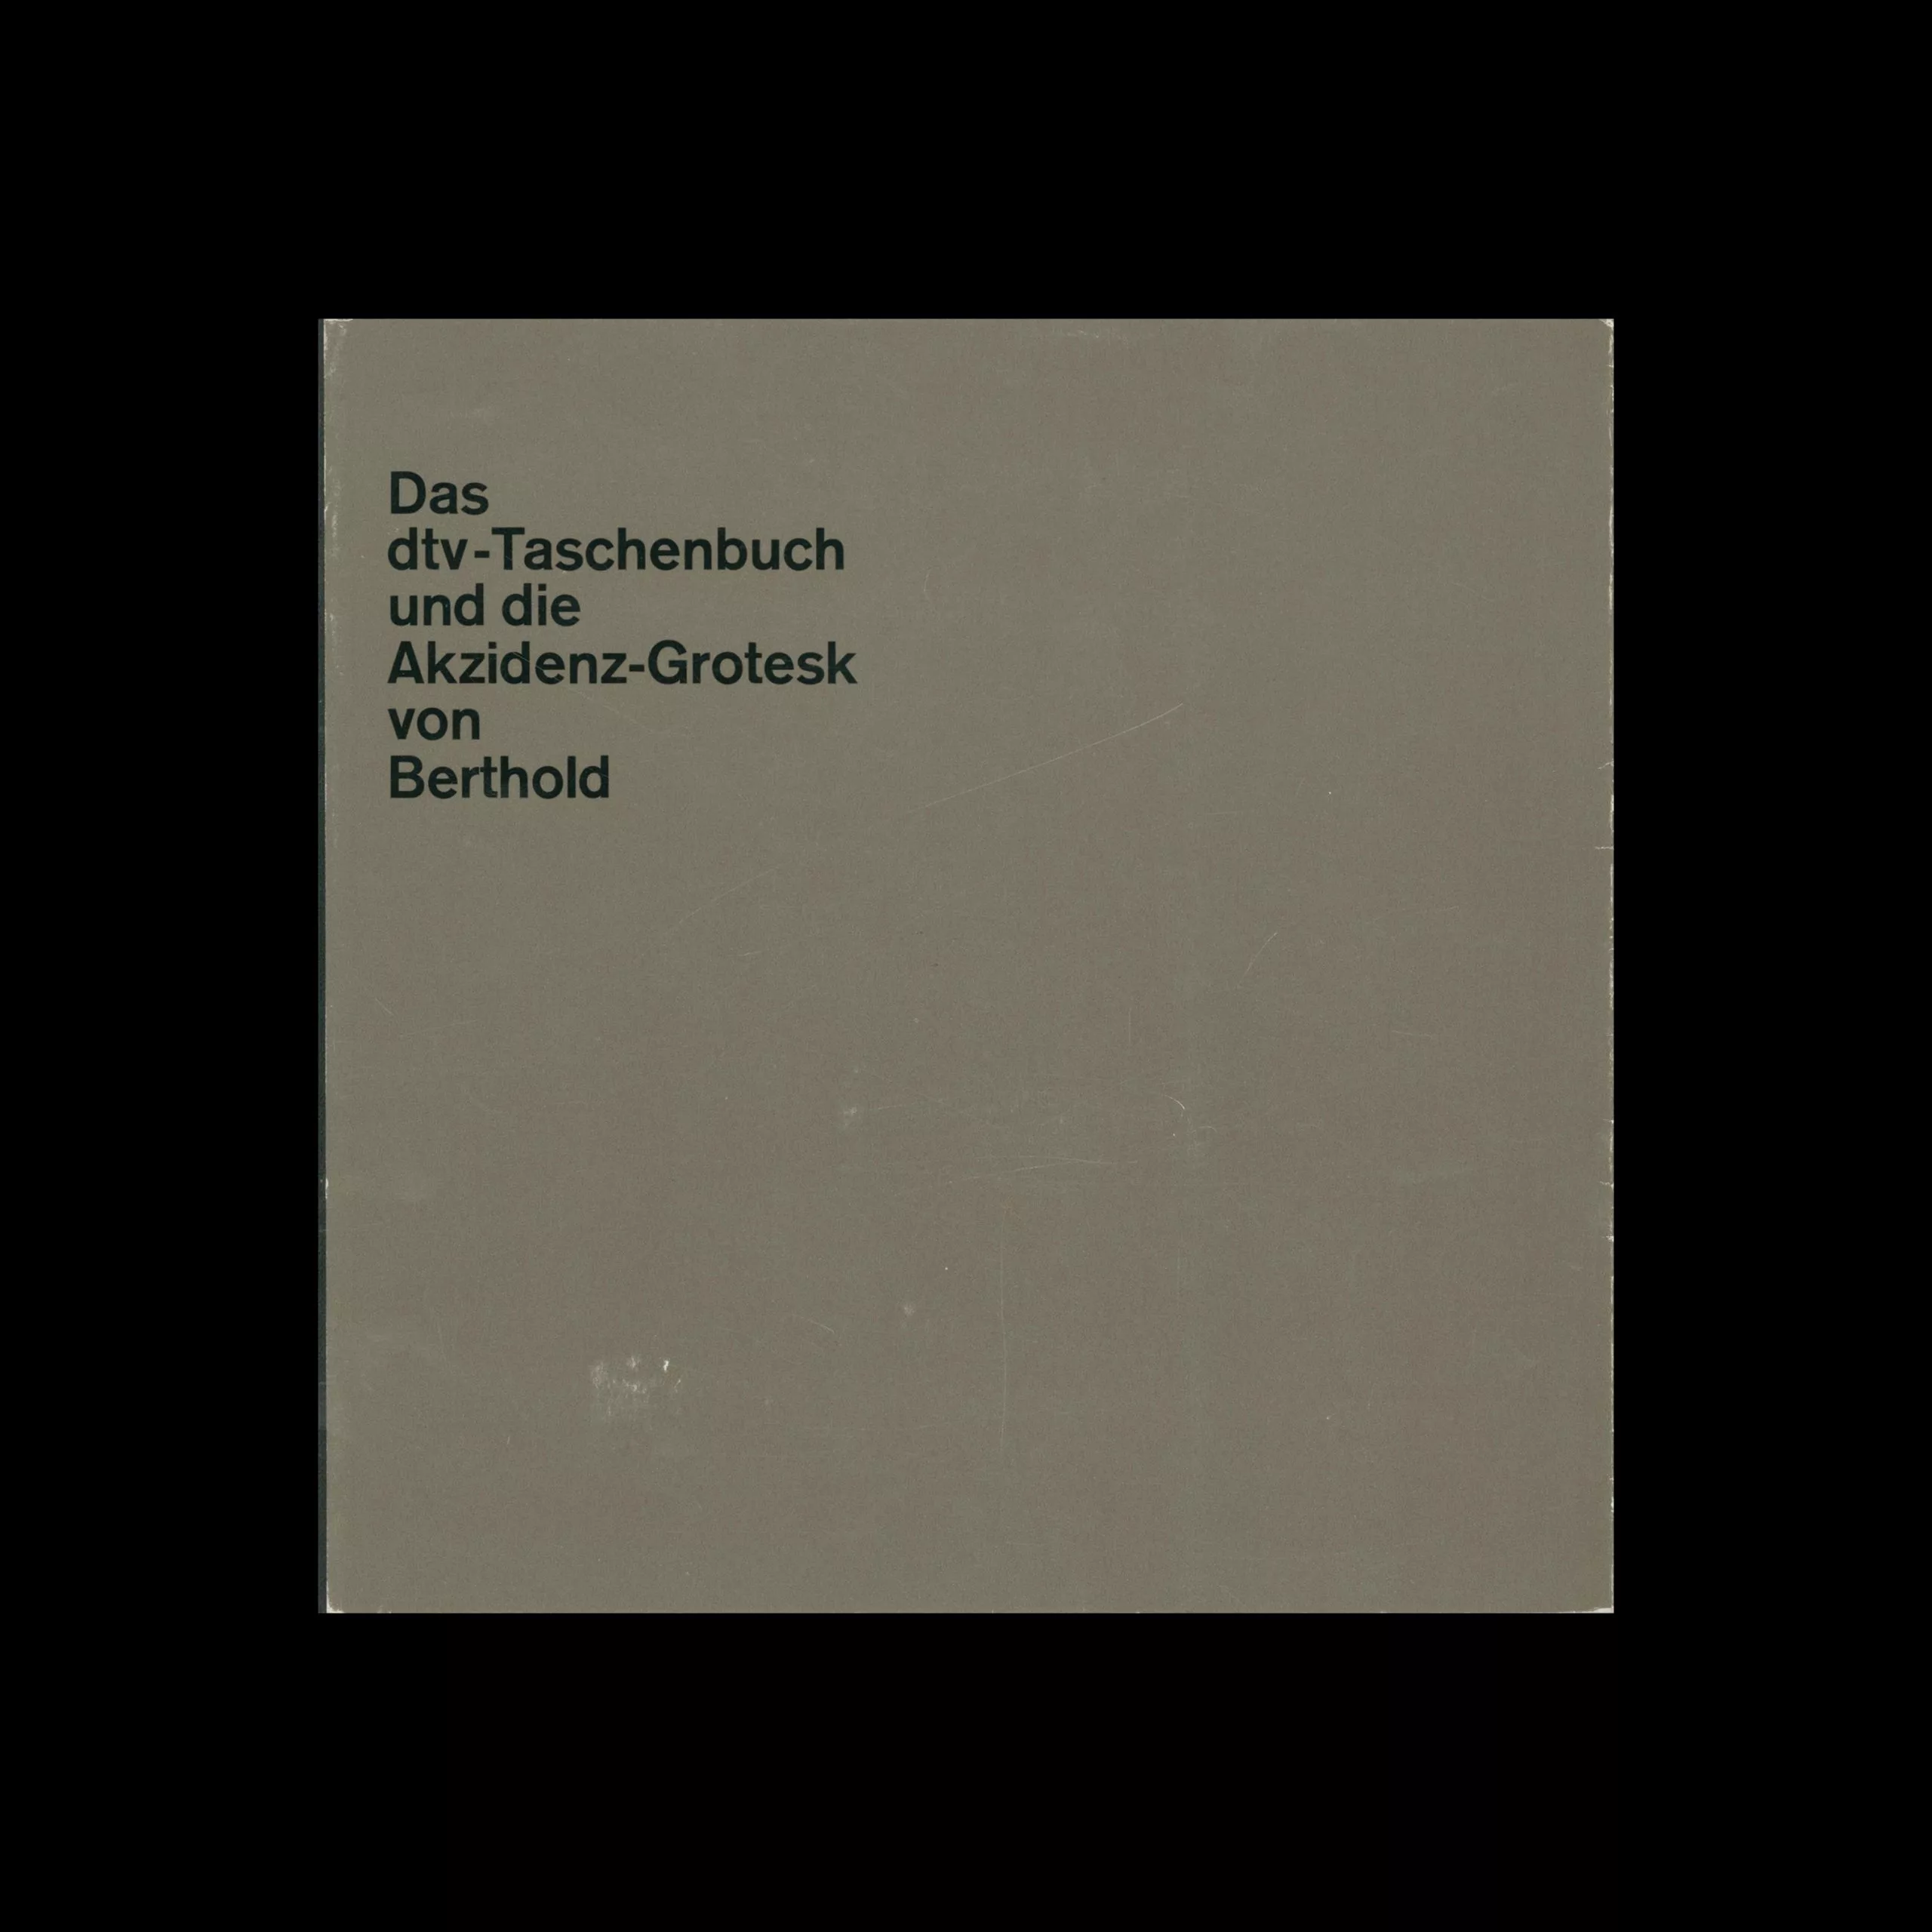 Das dtv-Taschenbuch und die Akzidenz–Grotesk von Berthold, Heinz Friedrich, 1966 - Celestino Piatti